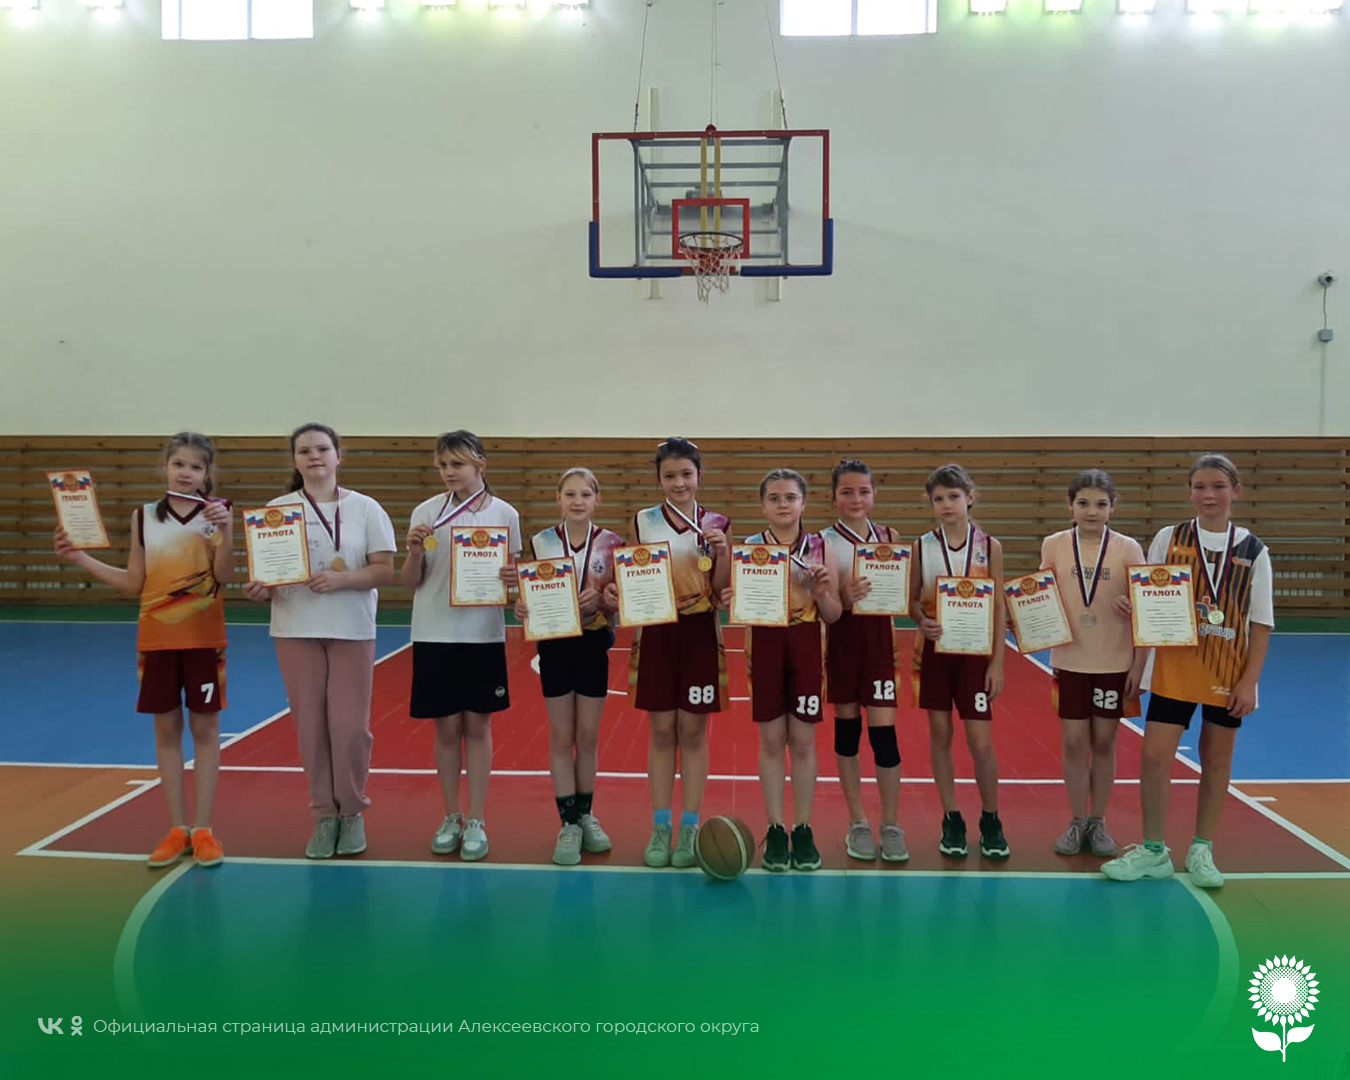 Во Дворце спорта «Олимп» состоялось Первенство МБУ «Алексеевская спортивная школа» по баскетболу 3х3 среди команд девушек 2007 и 2010 года рождения